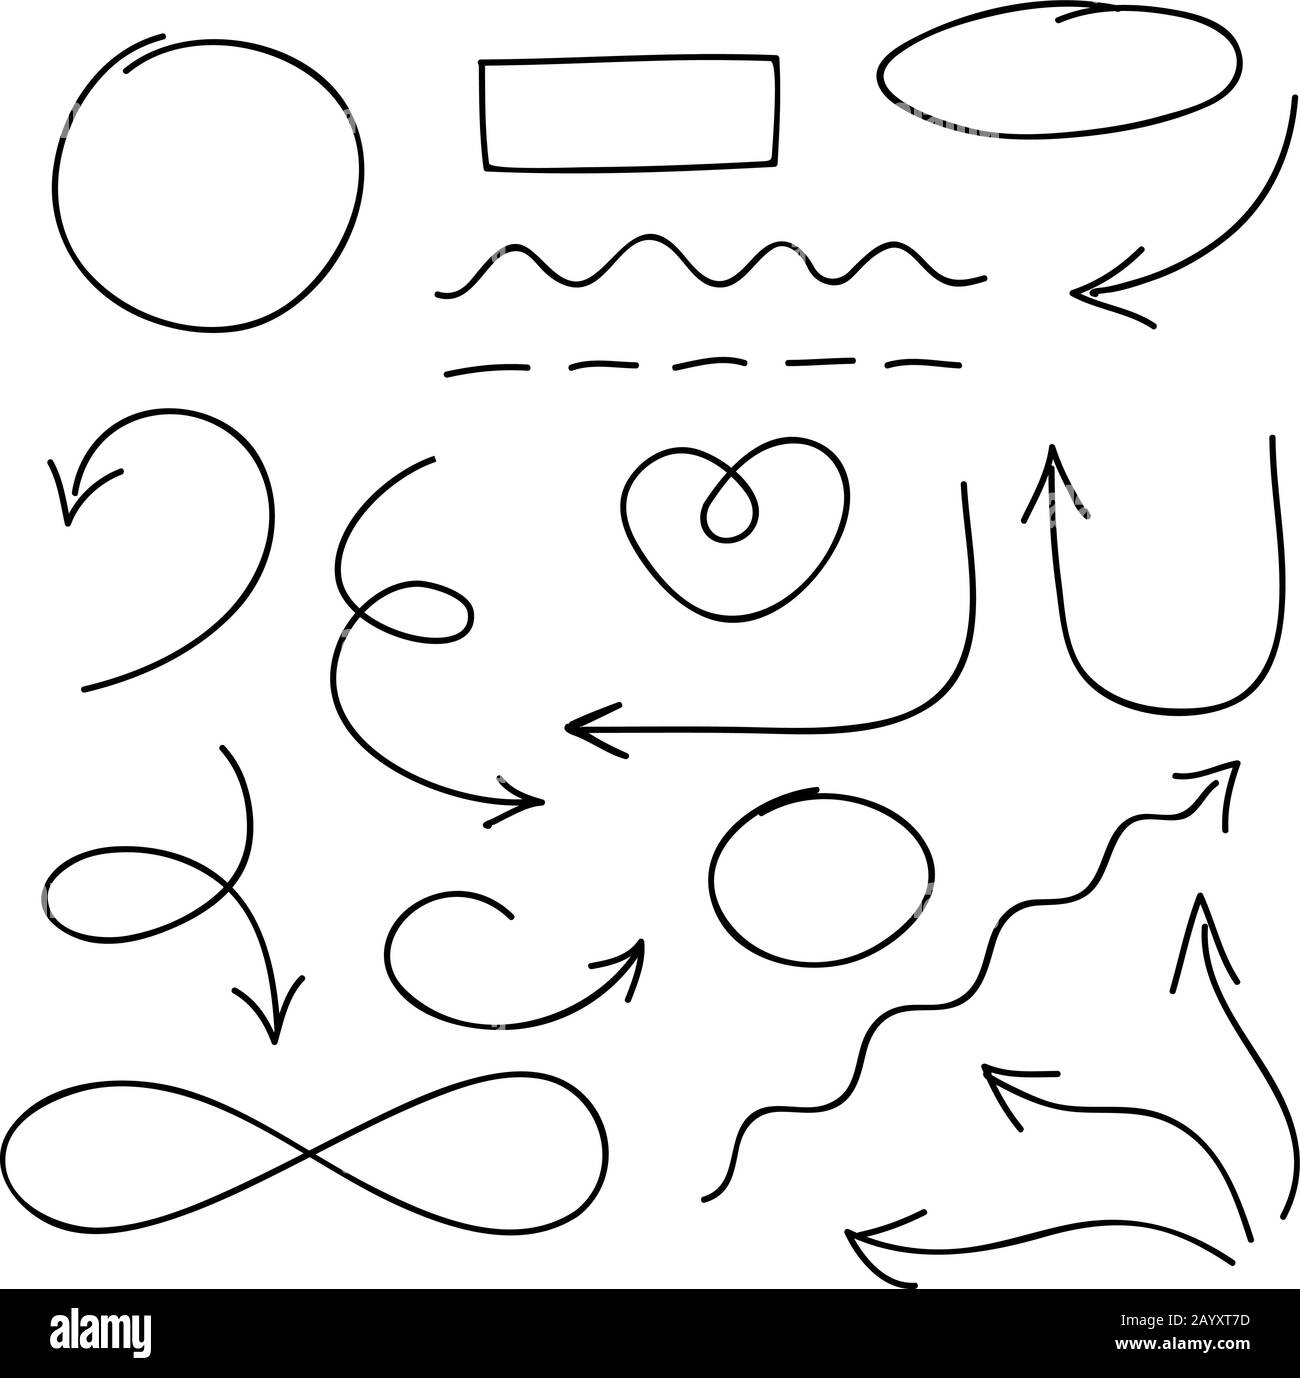 Vektorsatz für Pfeile, Kreise und Doodle-Symbole. Abbildung: Linienpfeilzeichen und Zeichenpfeile Stock Vektor